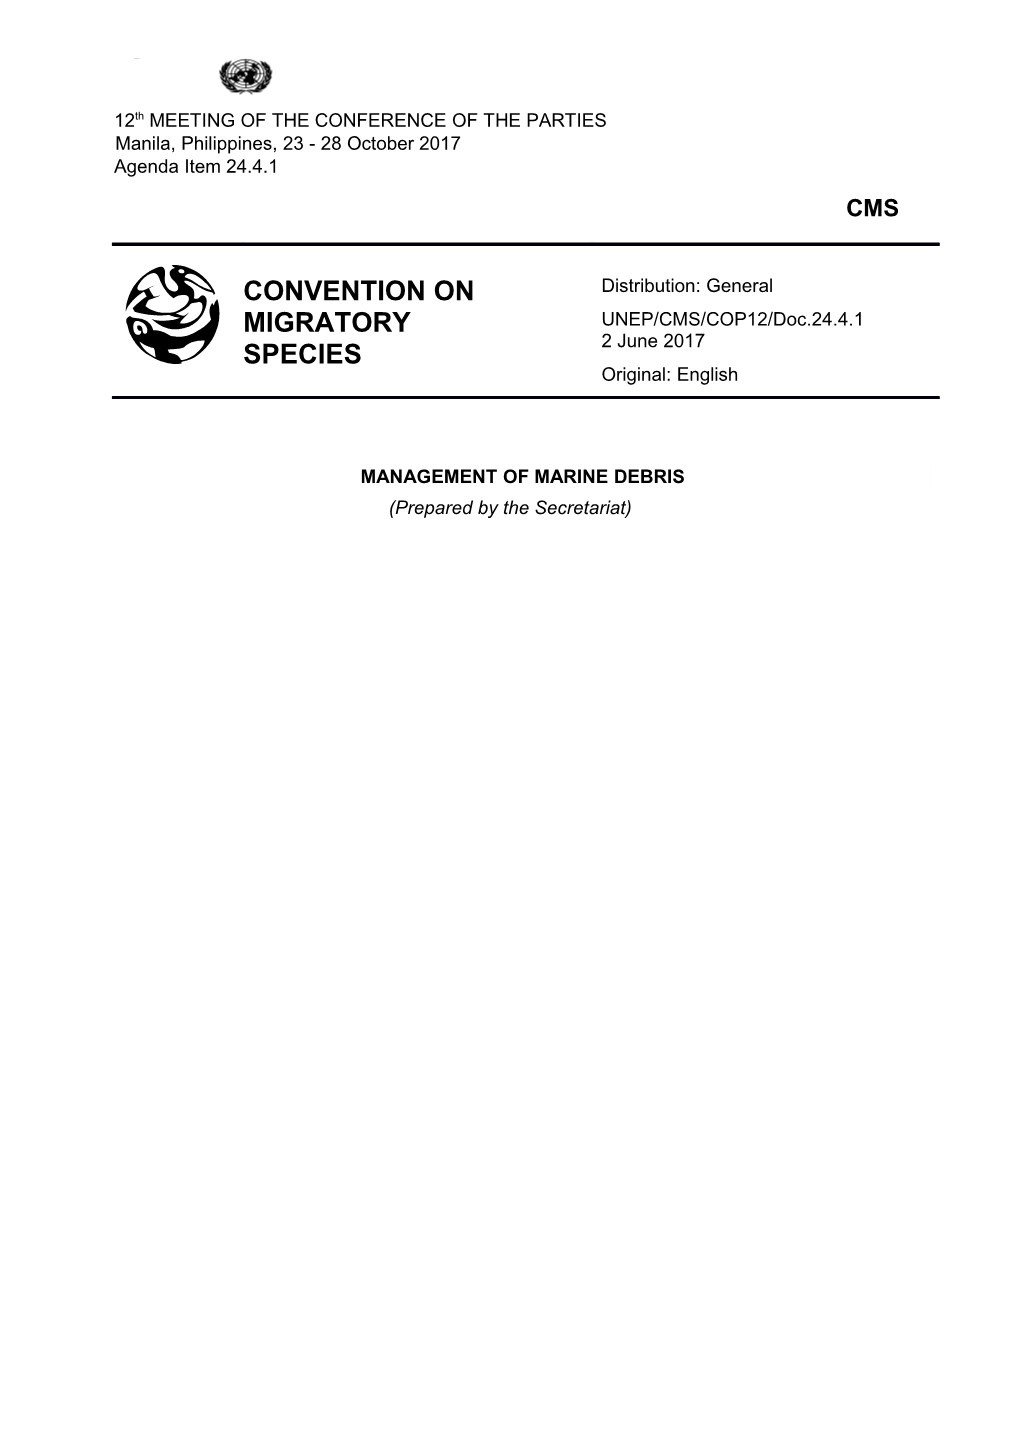 UNEP/CMS/COP12/Doc.22.2.4